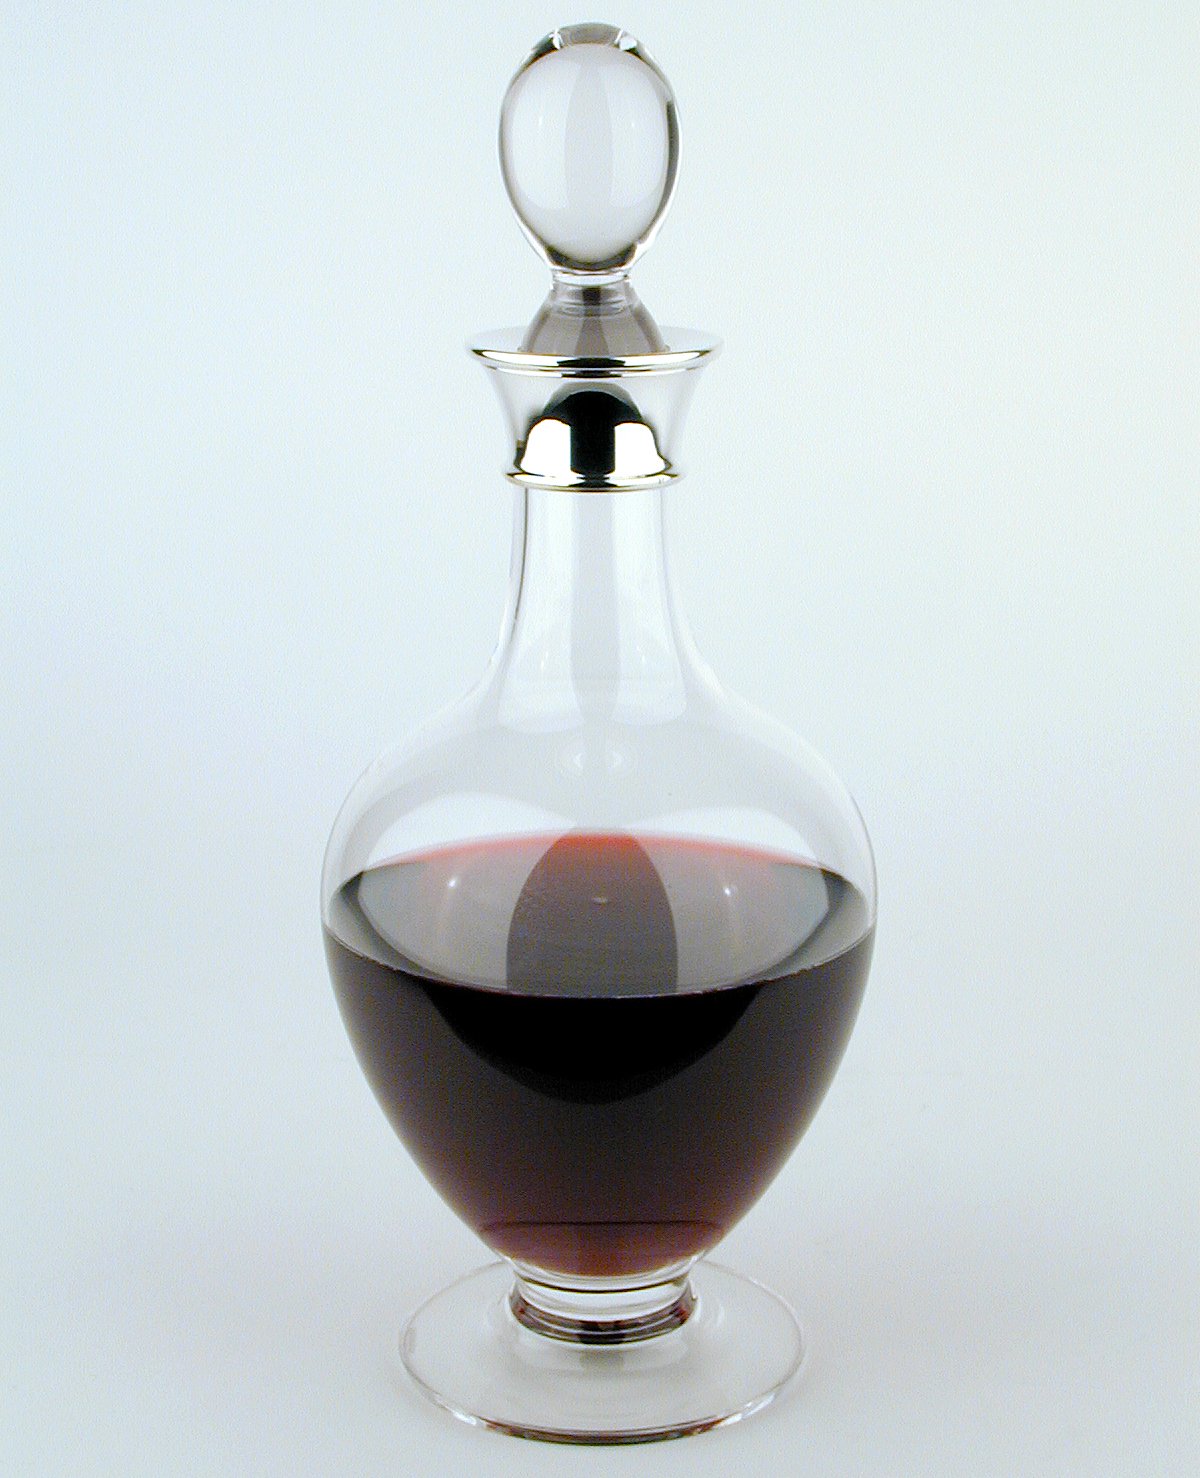 Wine jug